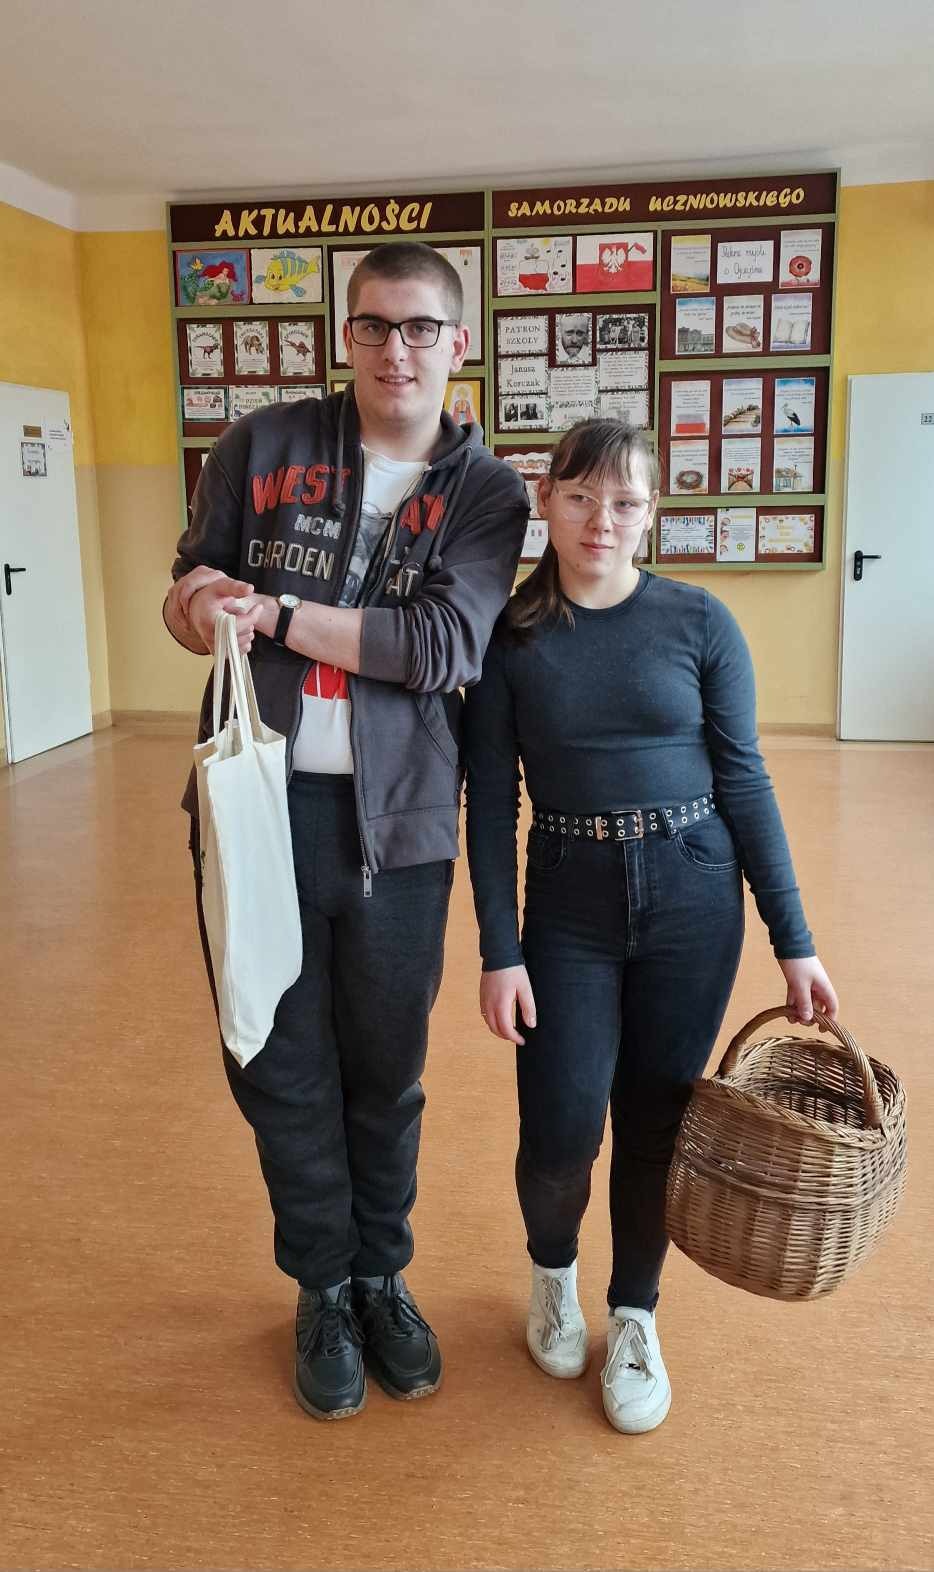 Uśmiechnięta nastolatka oraz nastolatek (oboje w okularach)  pozują z koszykiem i zwykłą torbą na zakupy